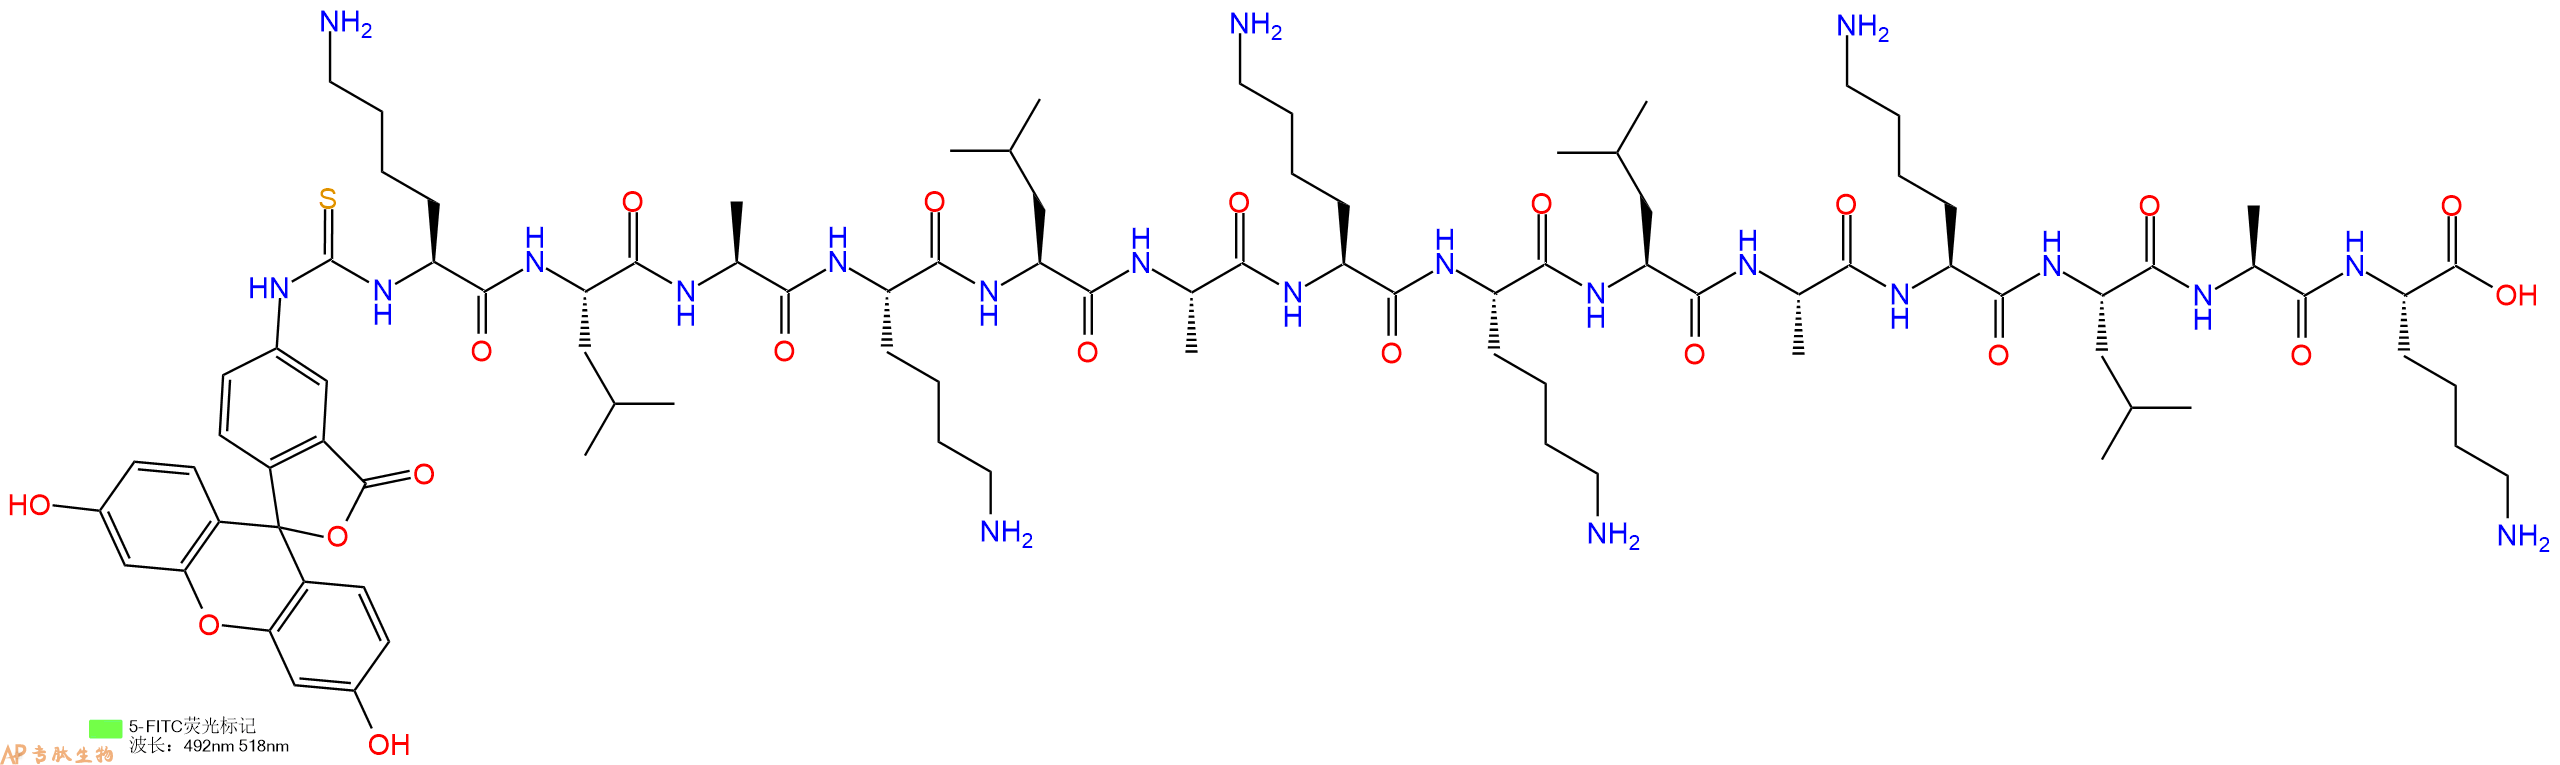 专肽生物产品十四肽Fitc-KLAKLAKKLAKLAK